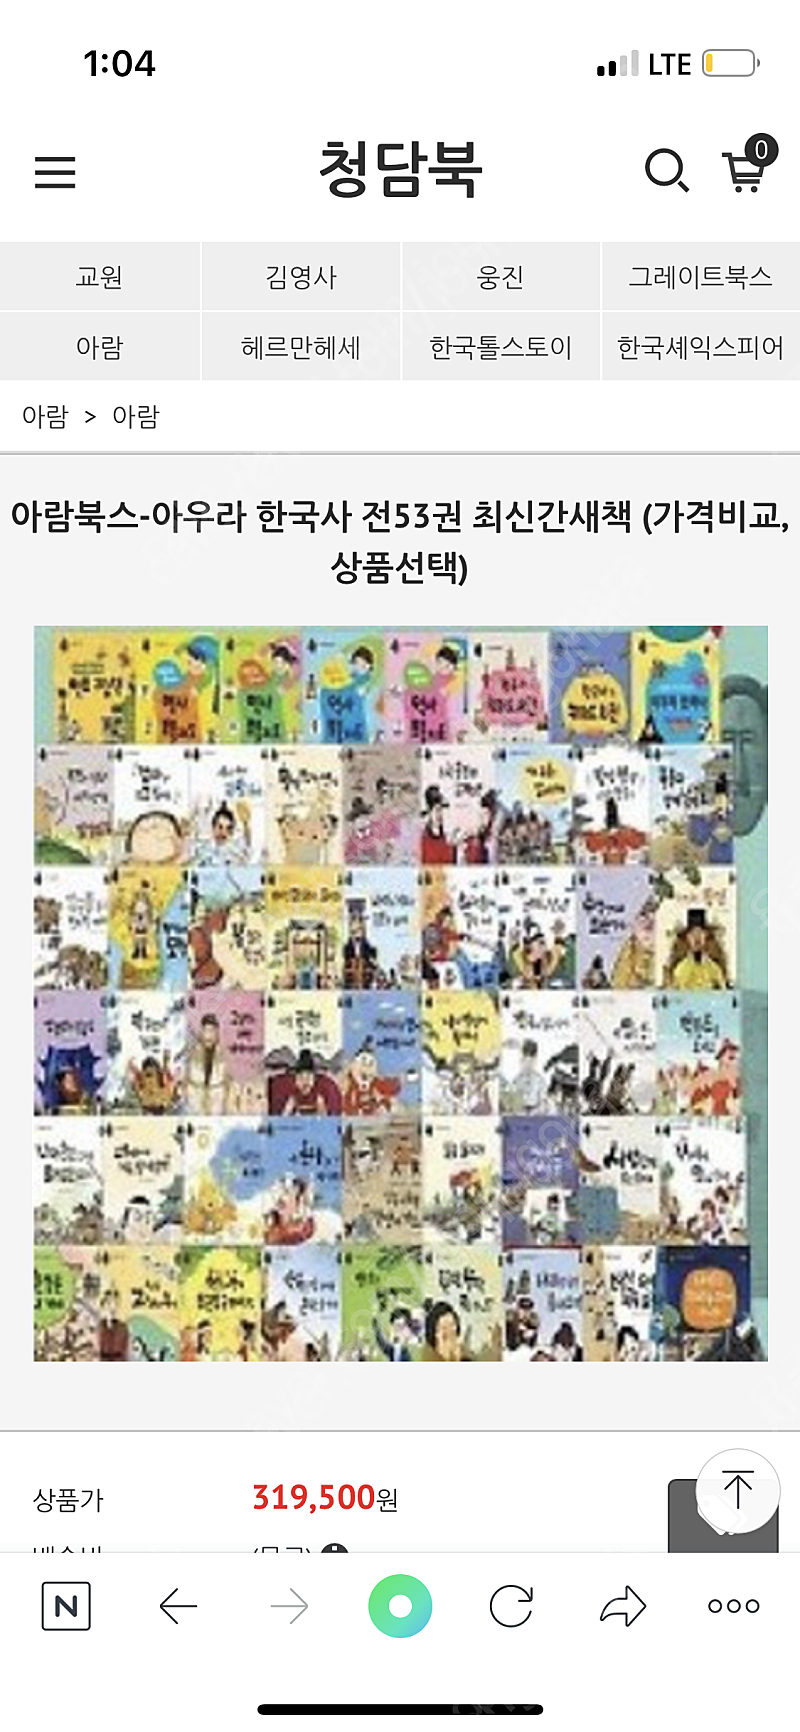 아우라한국사 최신판 미개봉